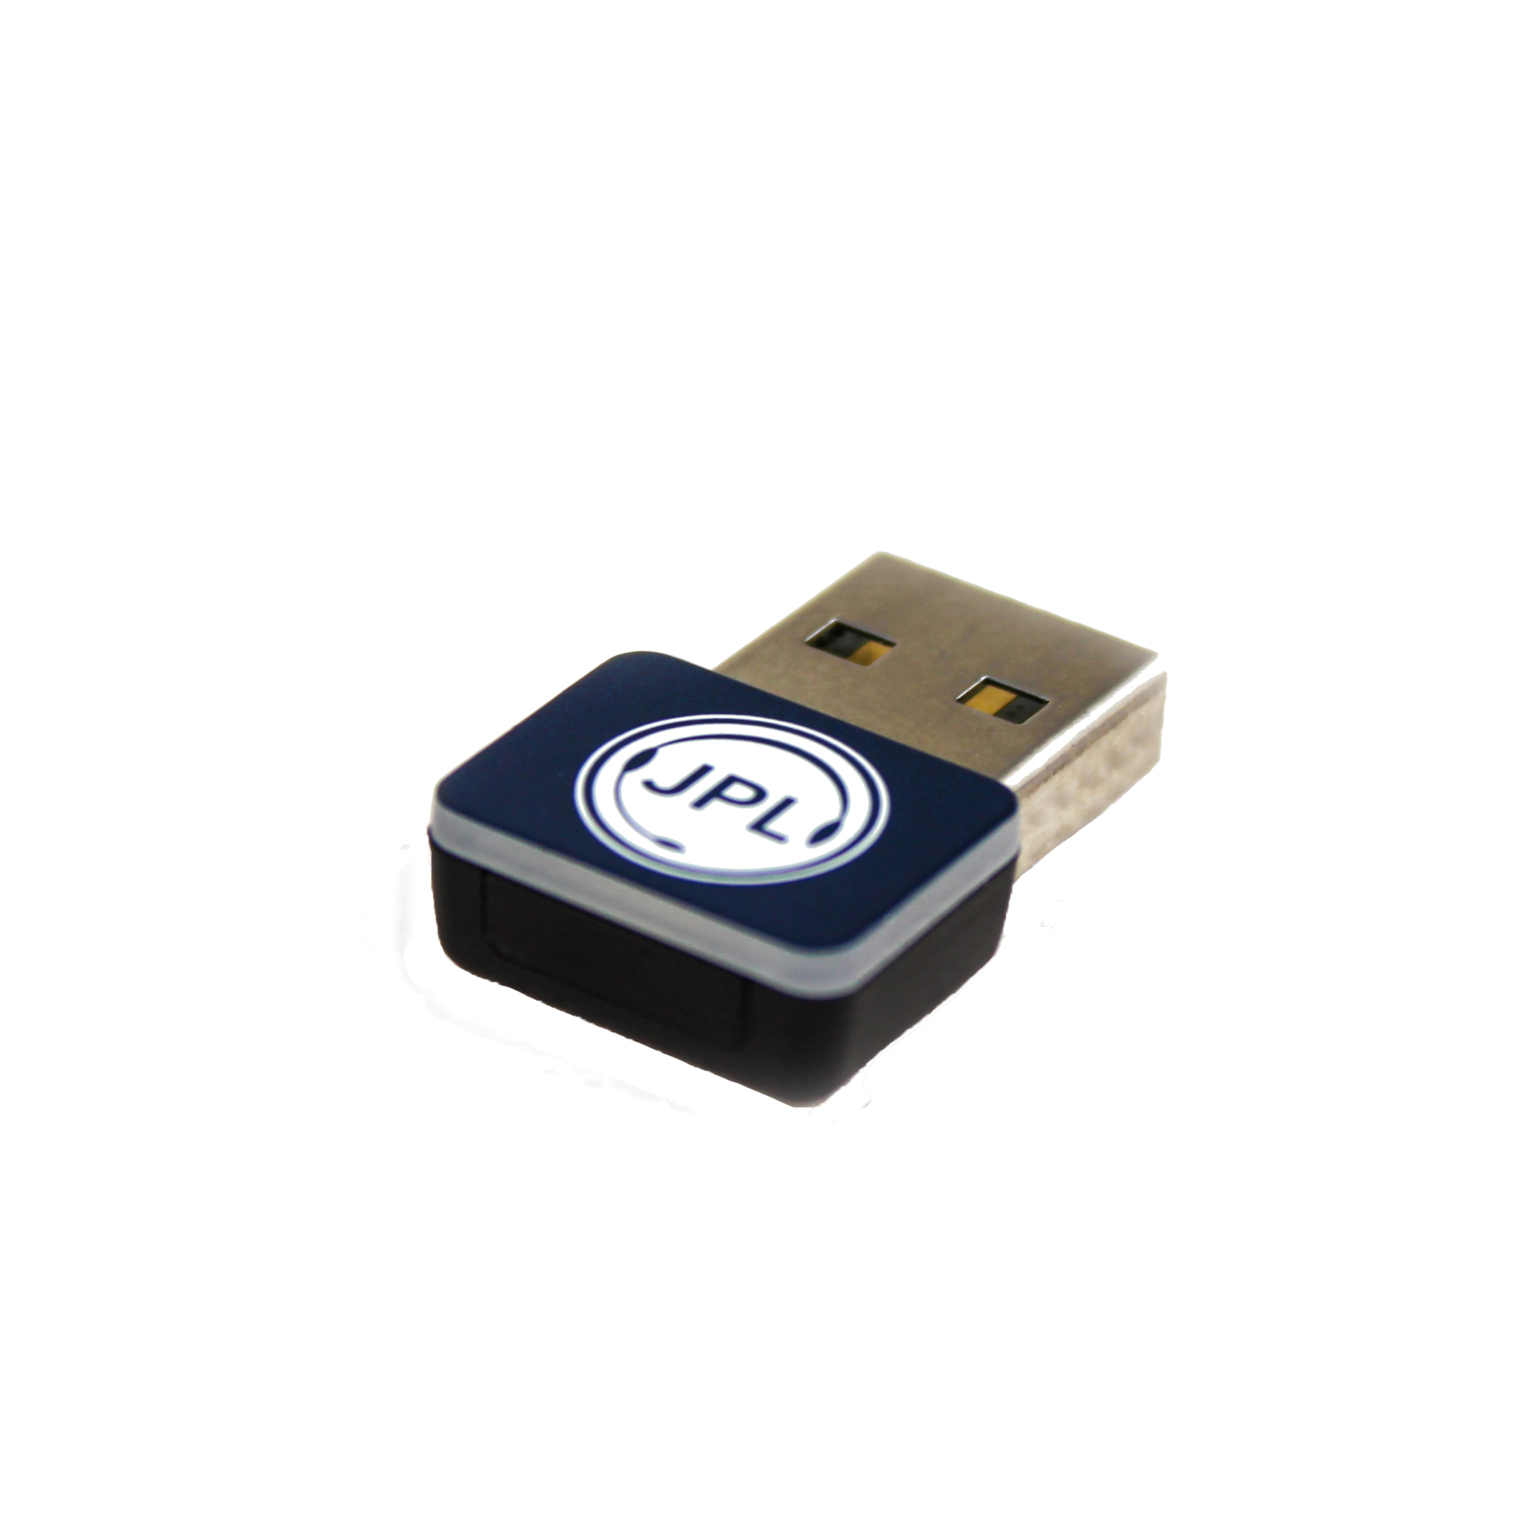 575-341-001 JPL TELECOM BT220 USB DONGLE